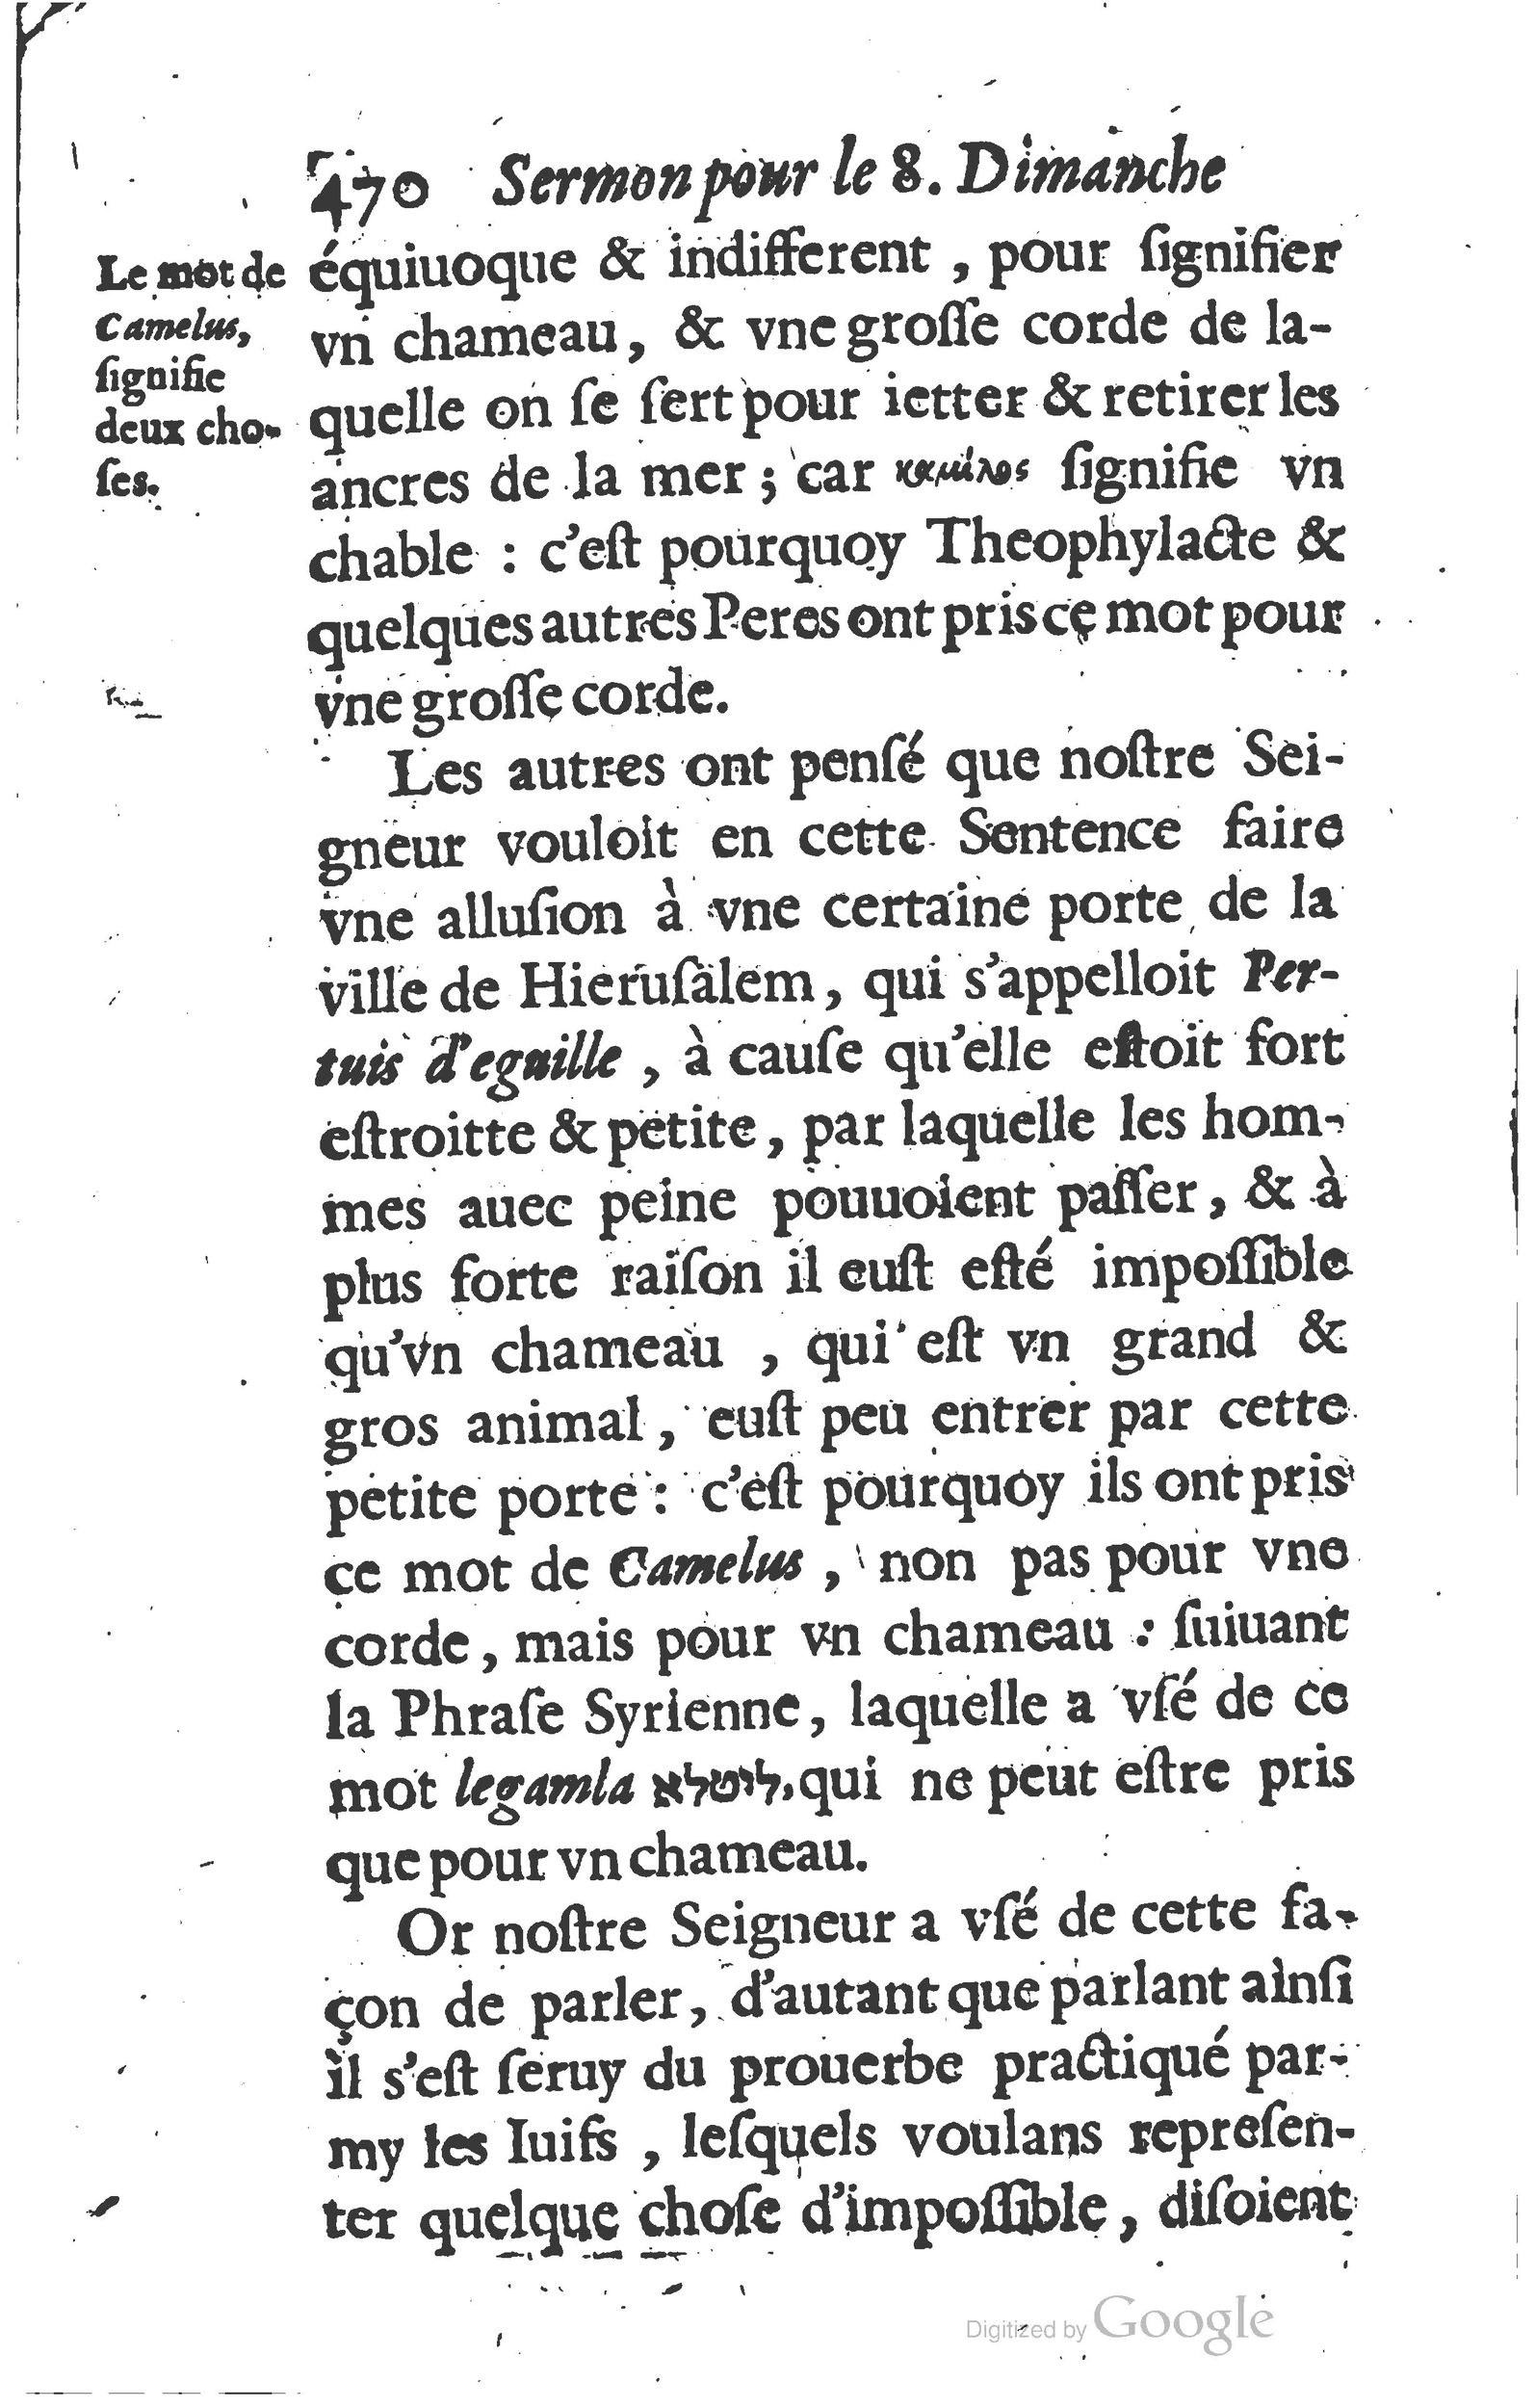 1629 Sermons ou trésor de la piété chrétienne_Page_493.jpg